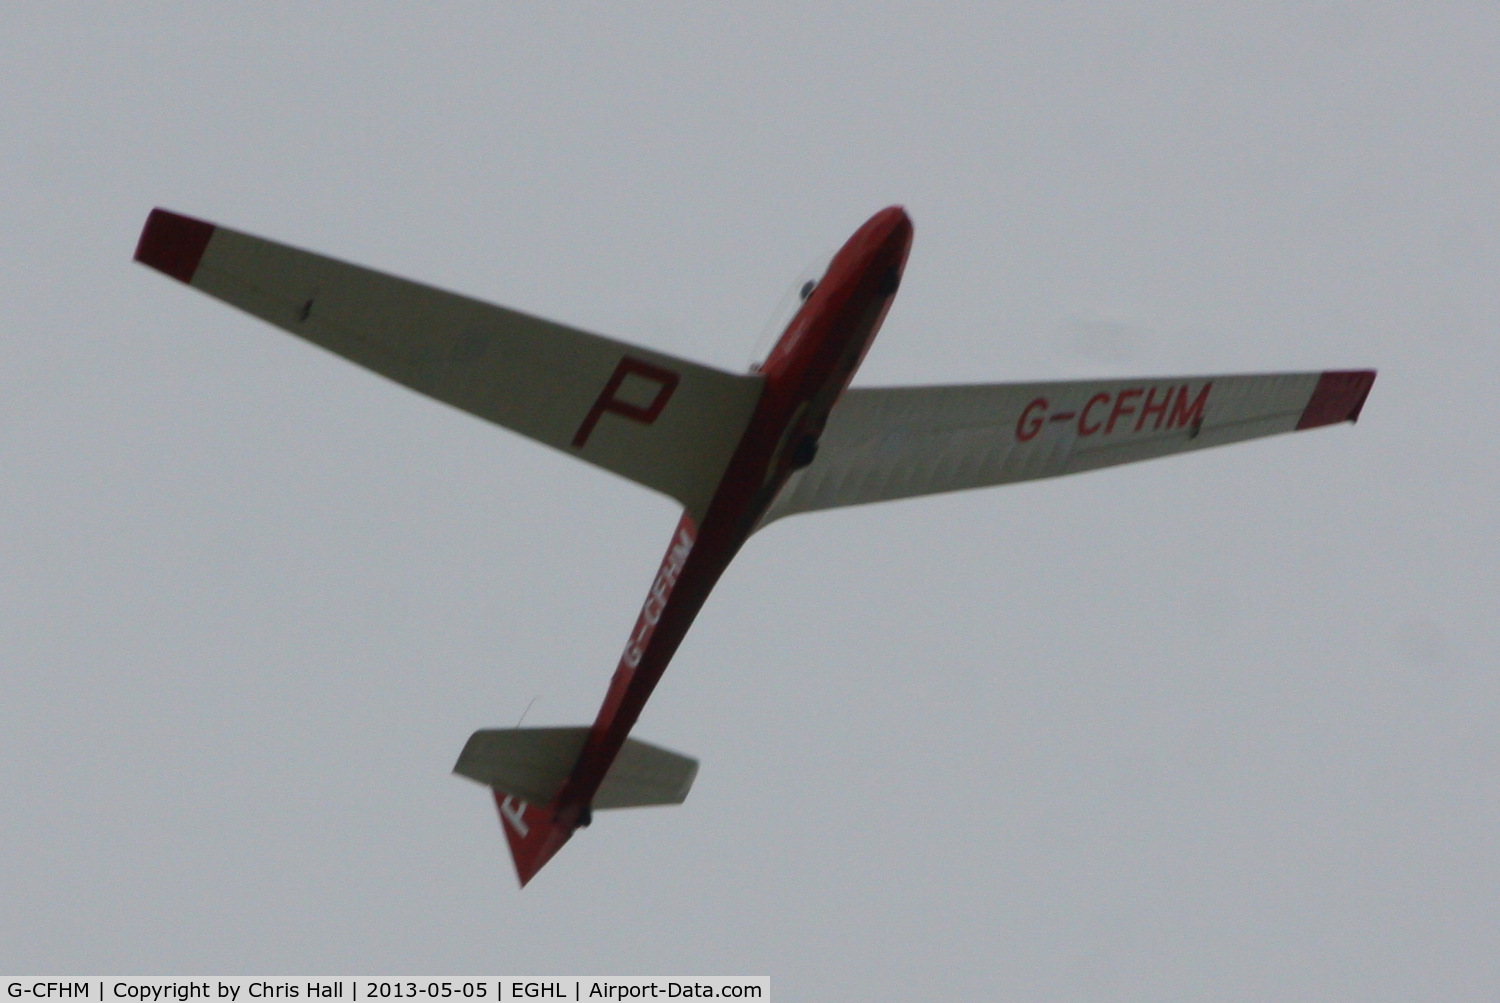 G-CFHM, Schleicher ASK-13 C/N 13662, at Lasham airfield